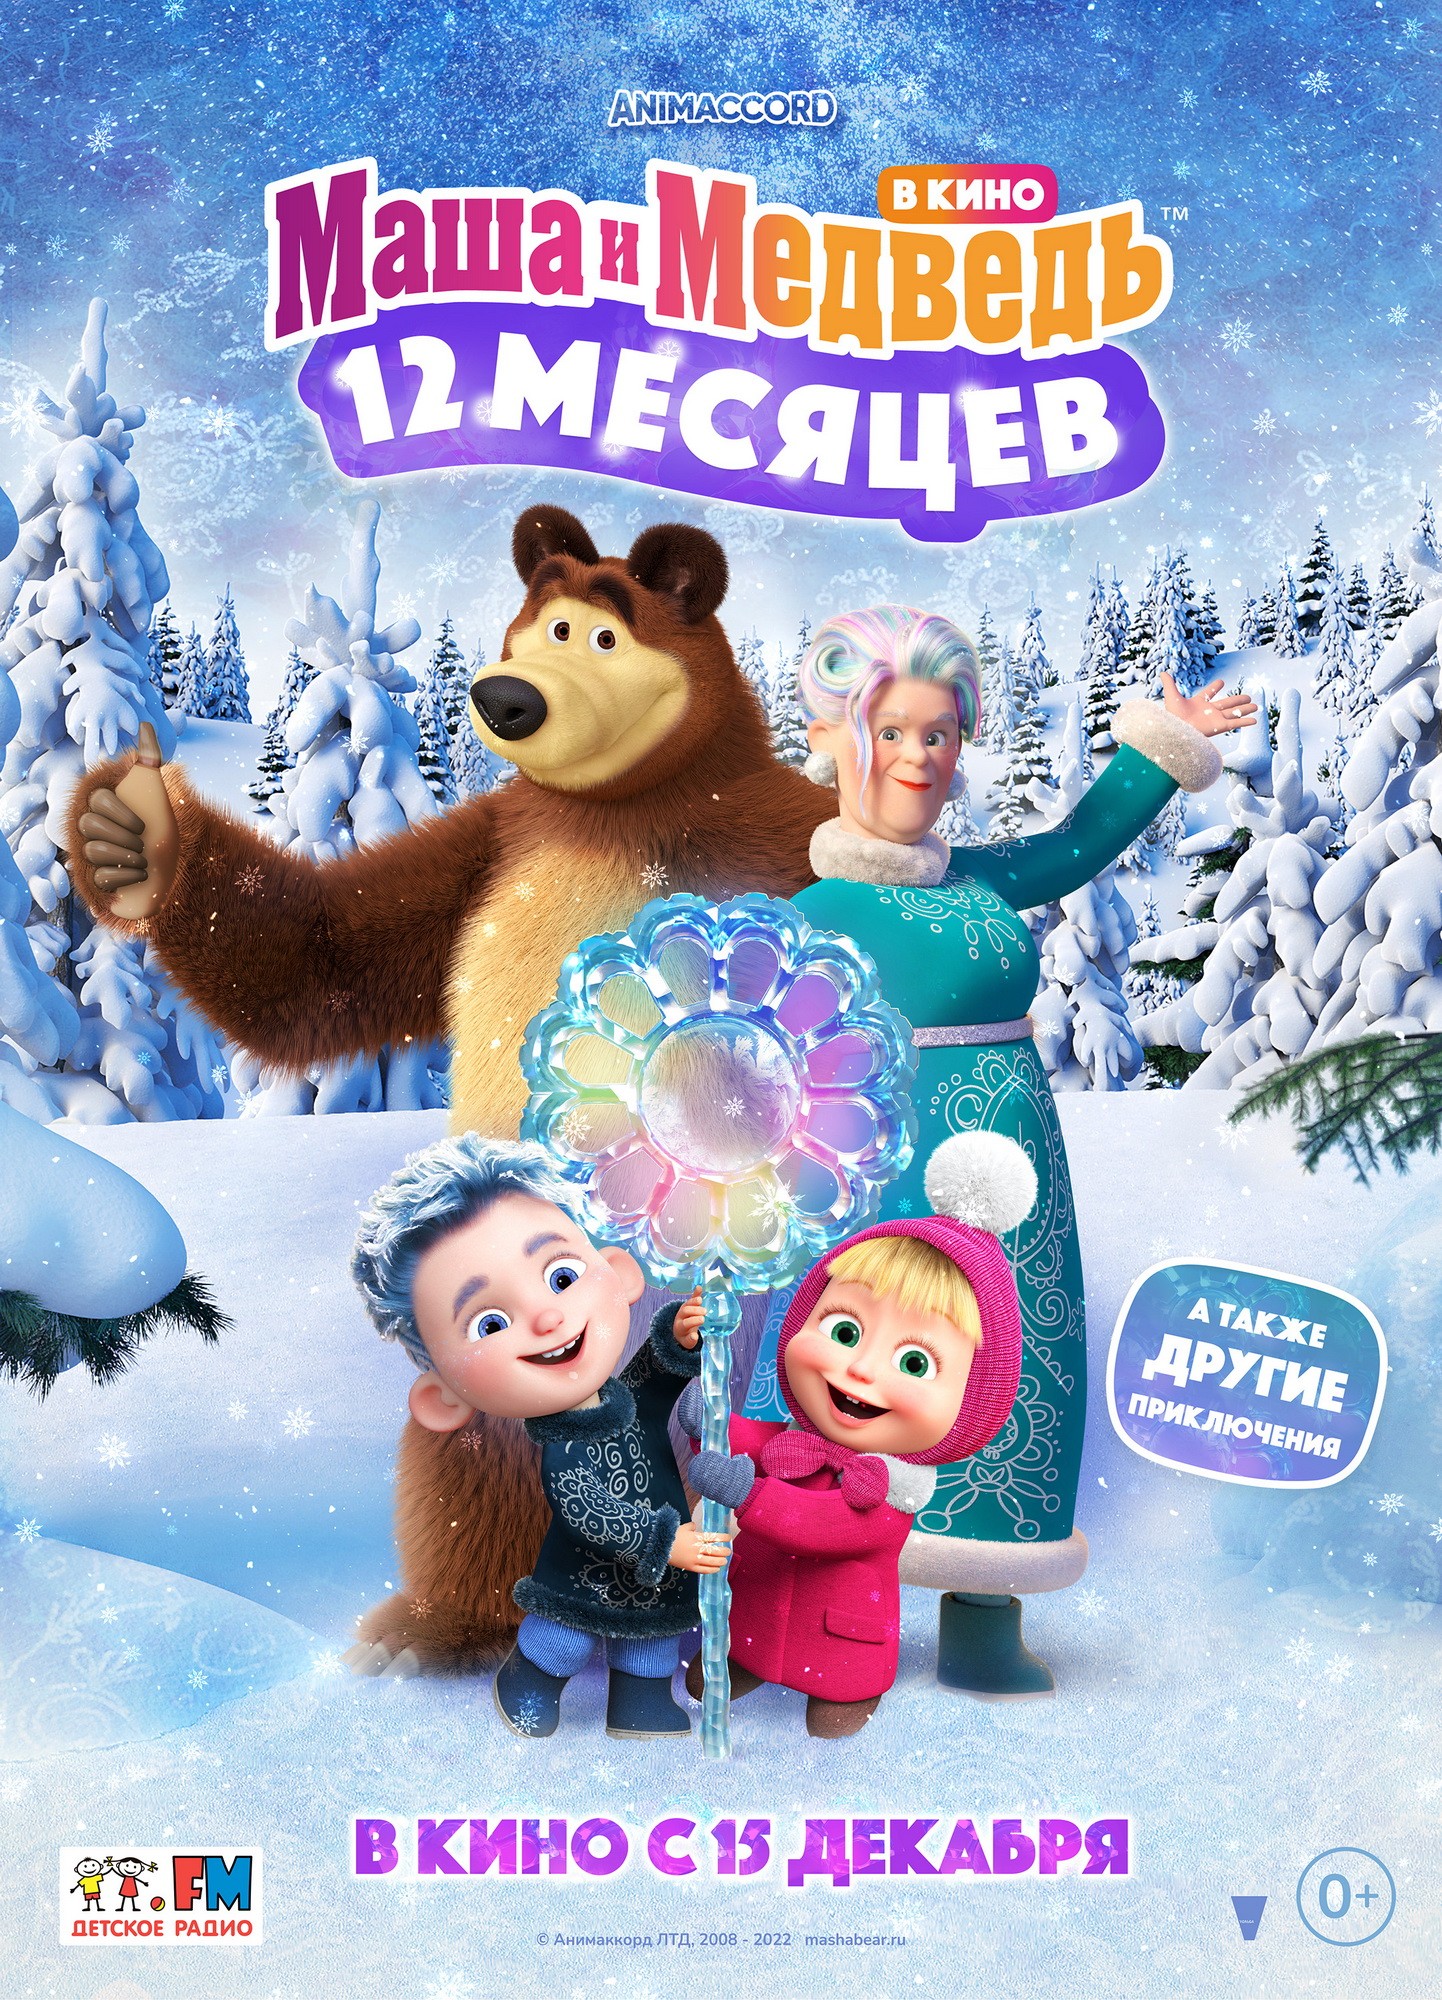 Маша и Медведь в кино: 12 месяцев: постер N208071